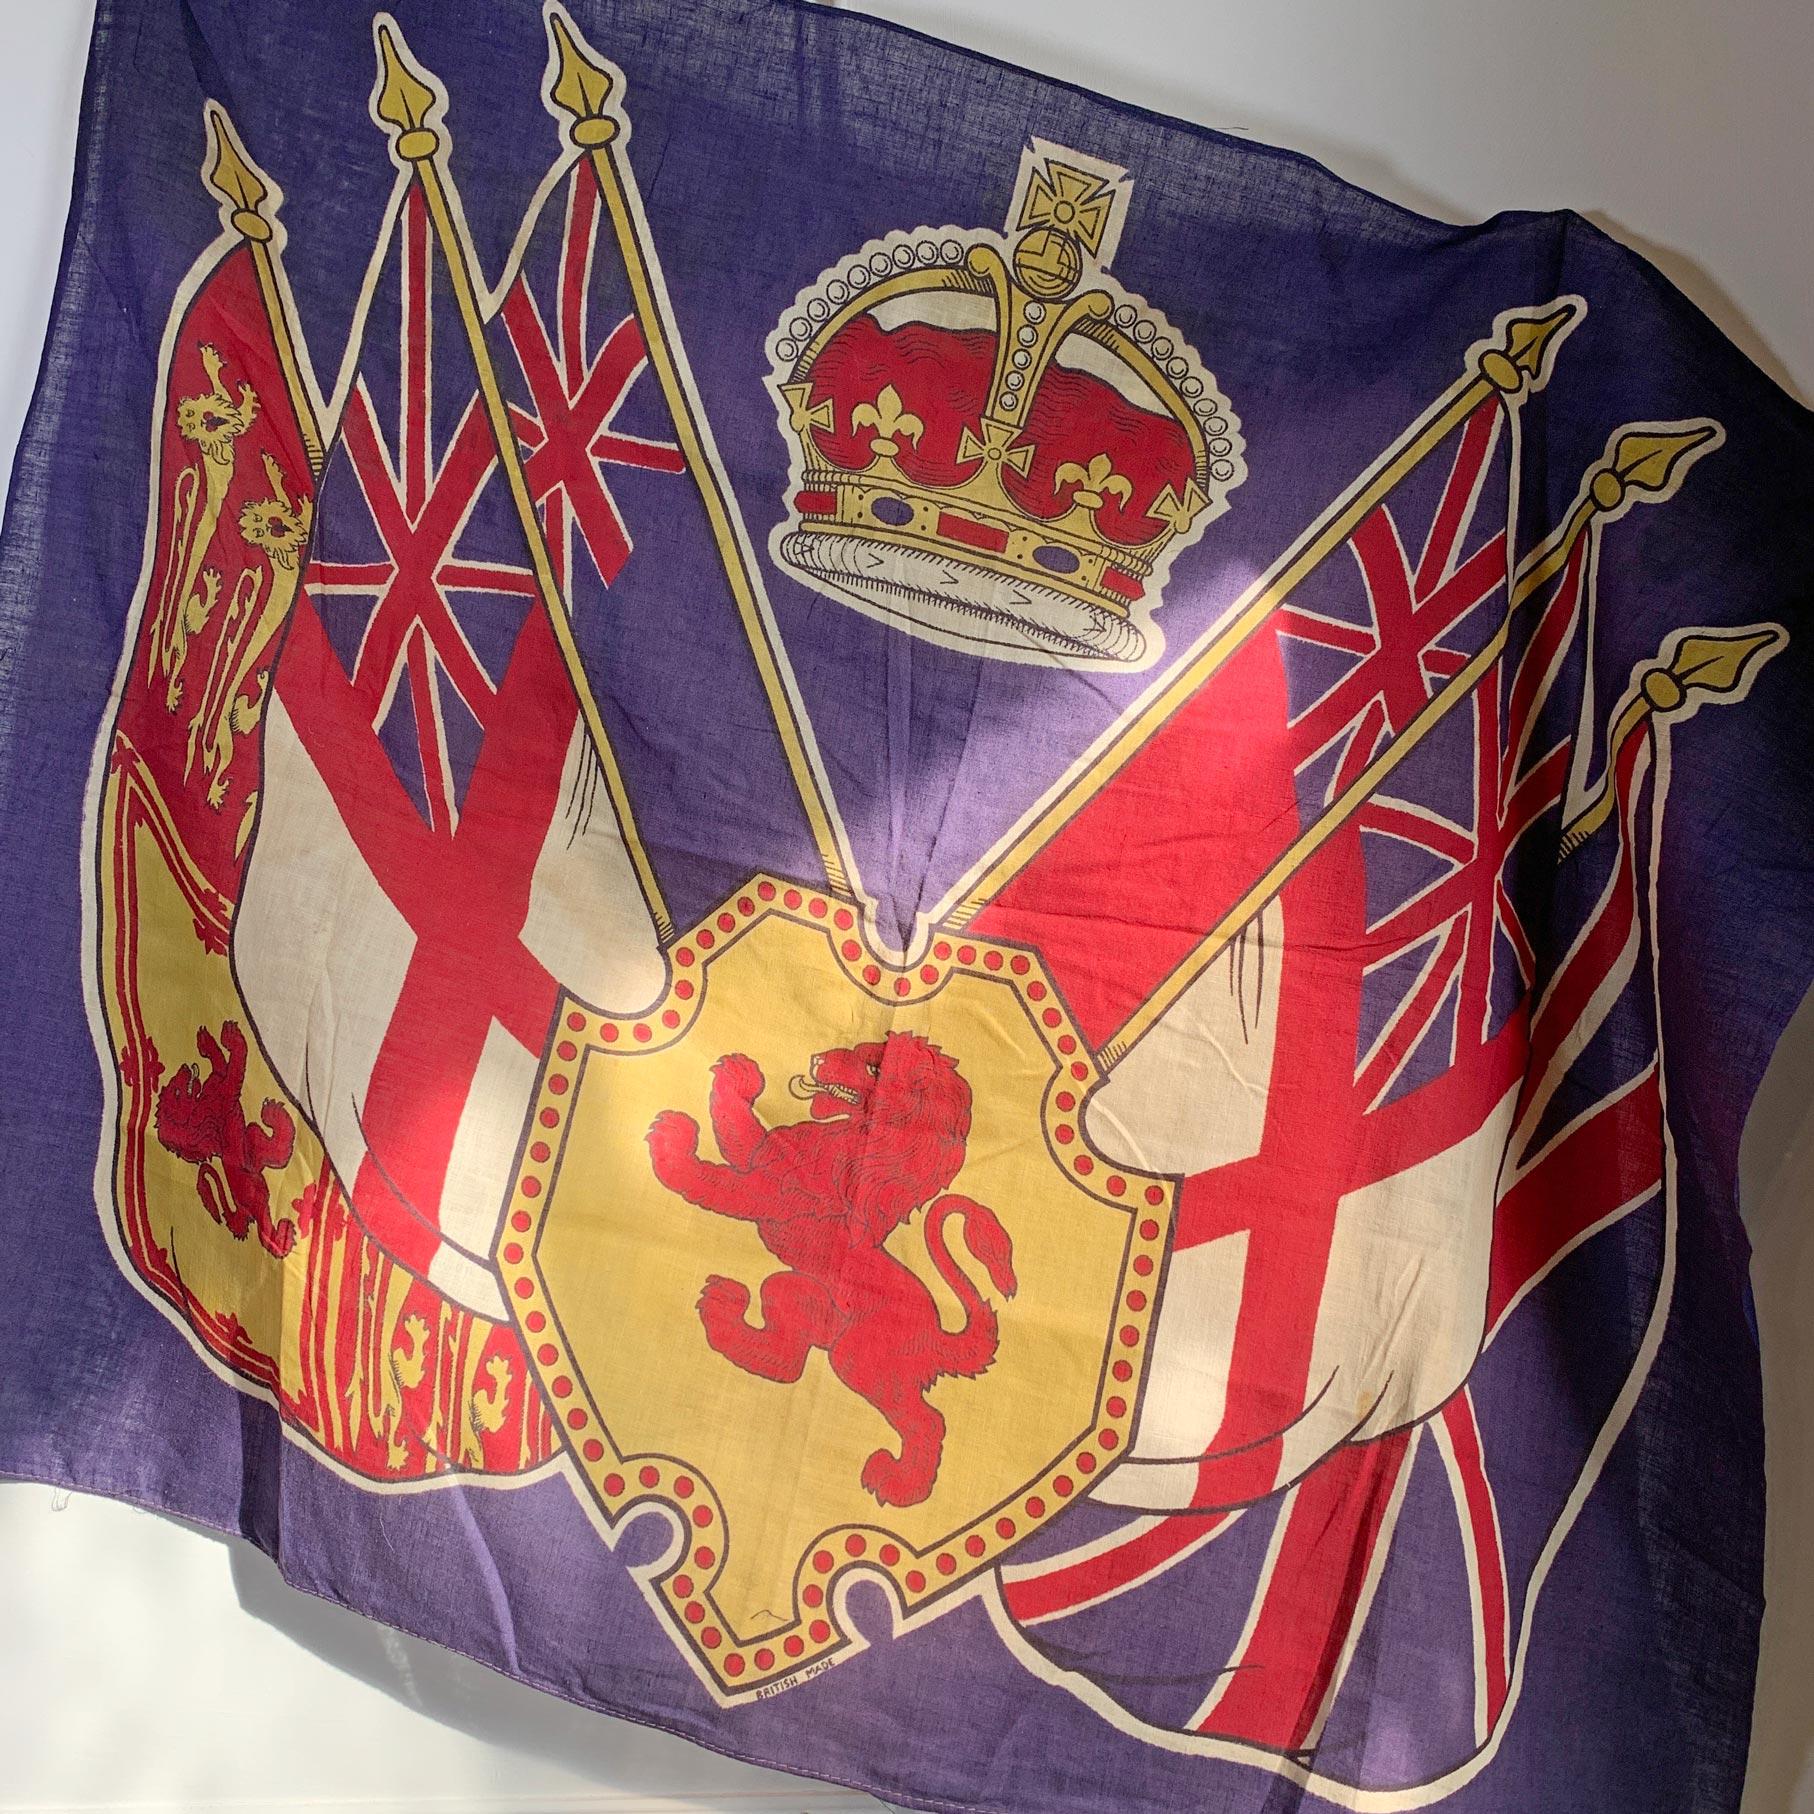 Britische königliche Familie

Eine seltene und historische königliche Krönungsfahne von der Krönung Seiner Königlichen Hoheit König Georg VI. im Jahr 1937. 

Georg VI. (Albert Frederick Arthur George; 14. Dezember 1895 - 6. Februar 1952) war vom 11.